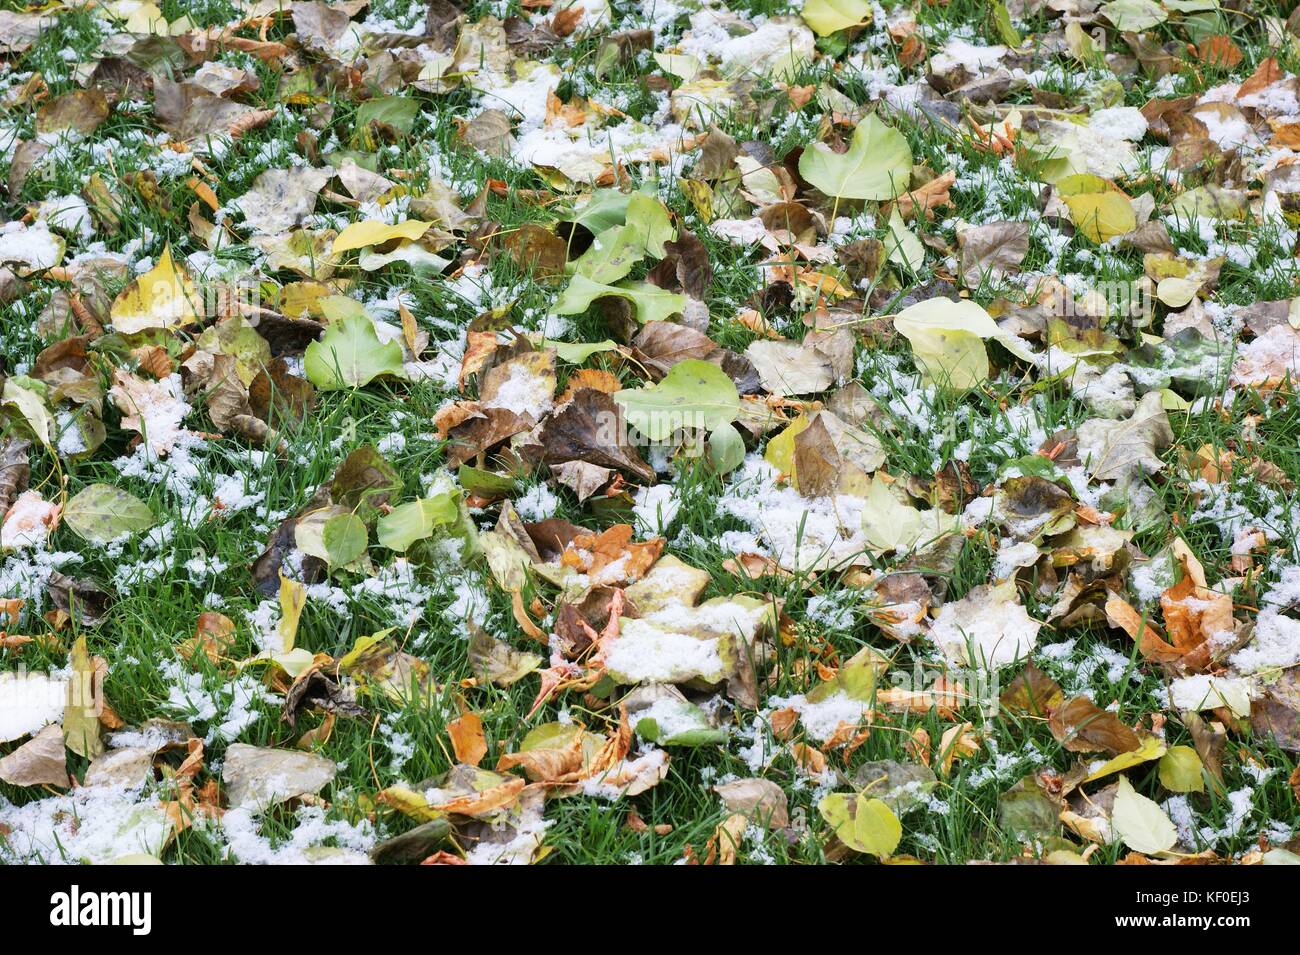 La neige tombait sur les feuilles, annonçant l'arrivée de l'hiver Banque D'Images